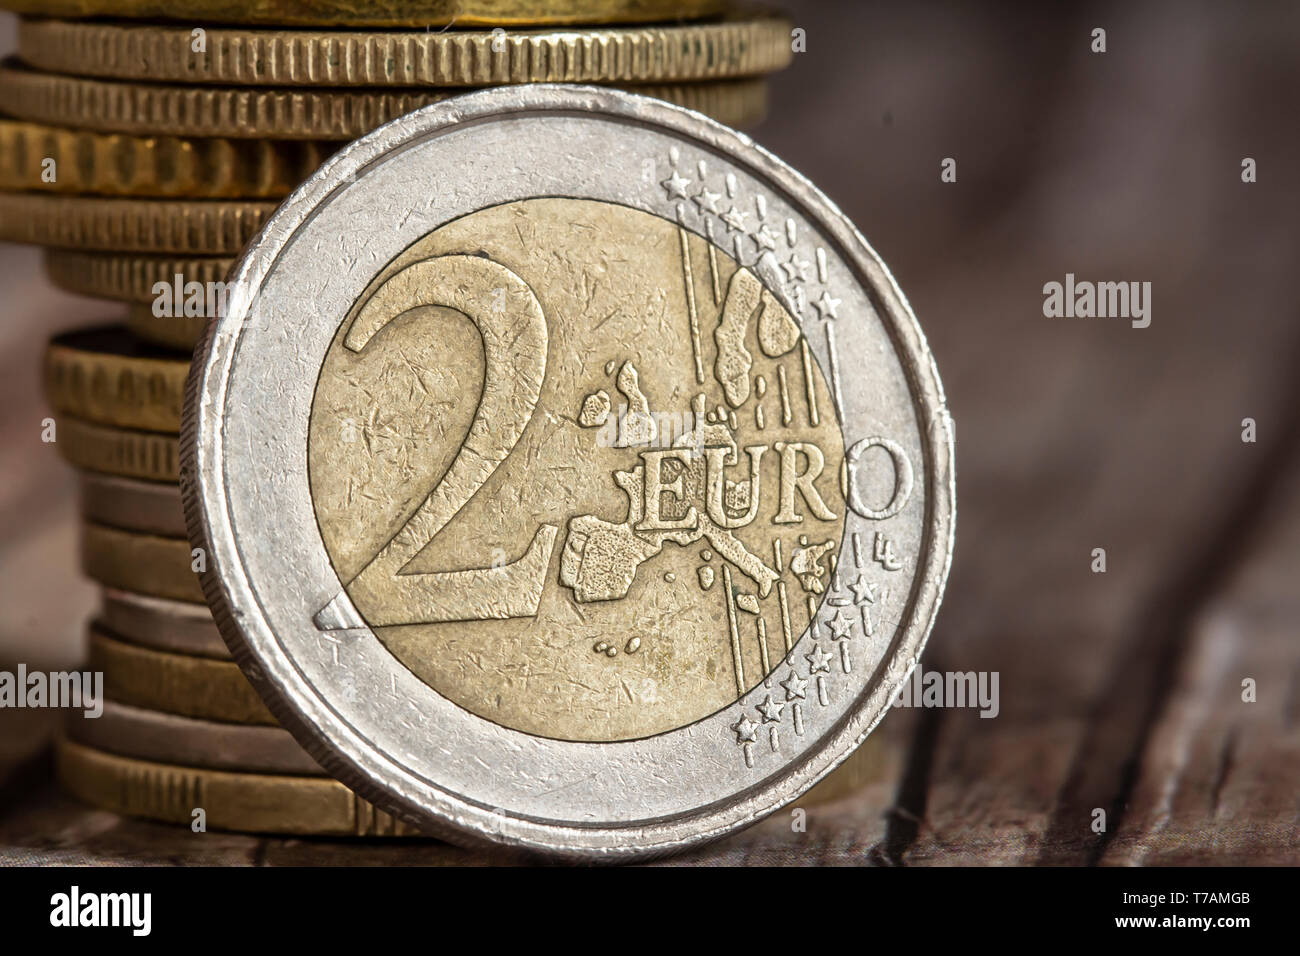 2 euro coin closeup Stock Photo